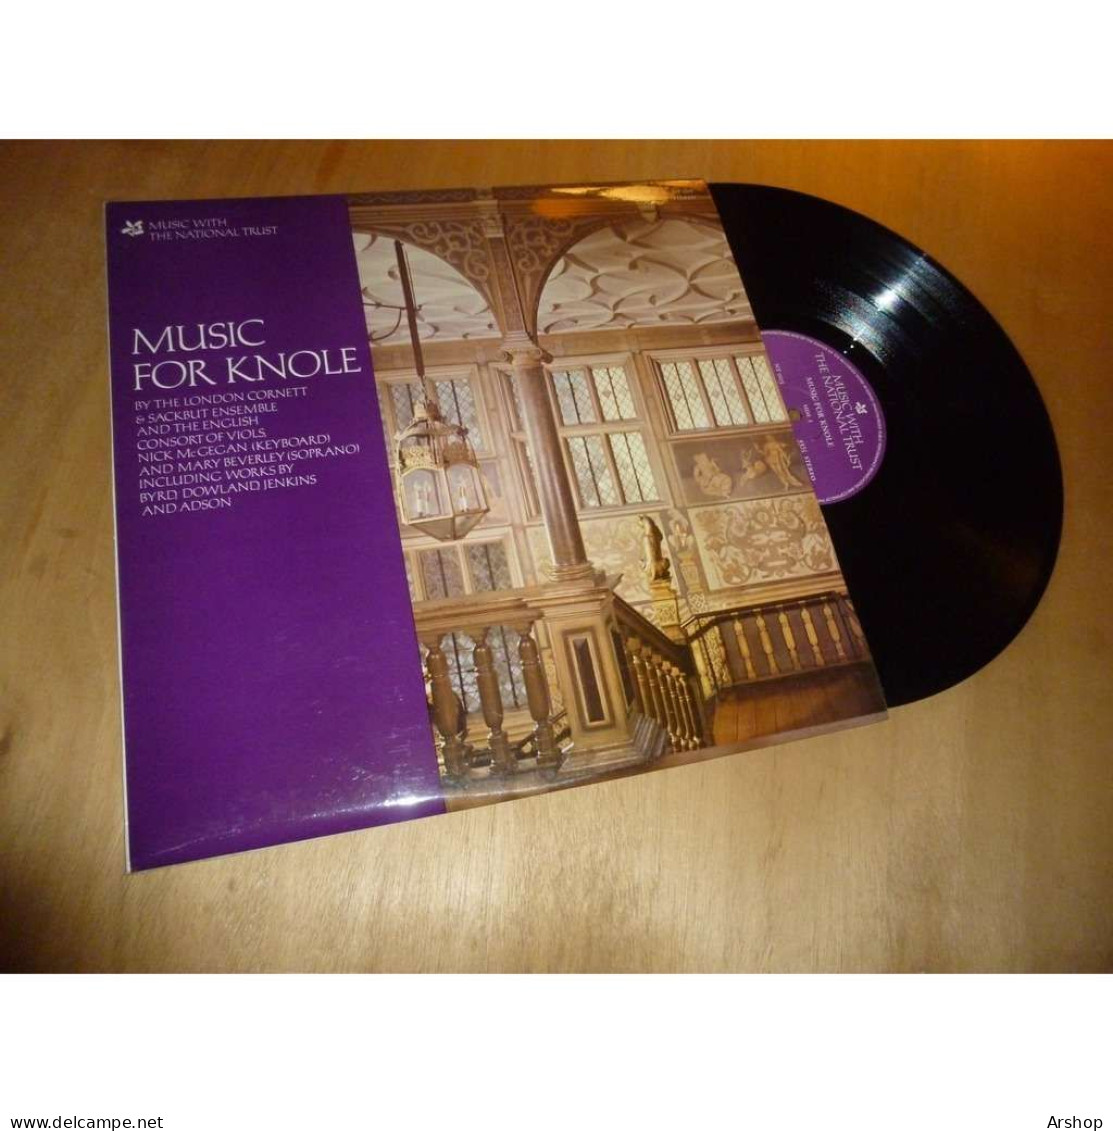 LONDON CORNETT & SACKBUT ENSEMBLE - MARY BEVERLEY Music For Knole MUSIC WITH THE NATIONAL TRUST - UK 1977 - Klassik